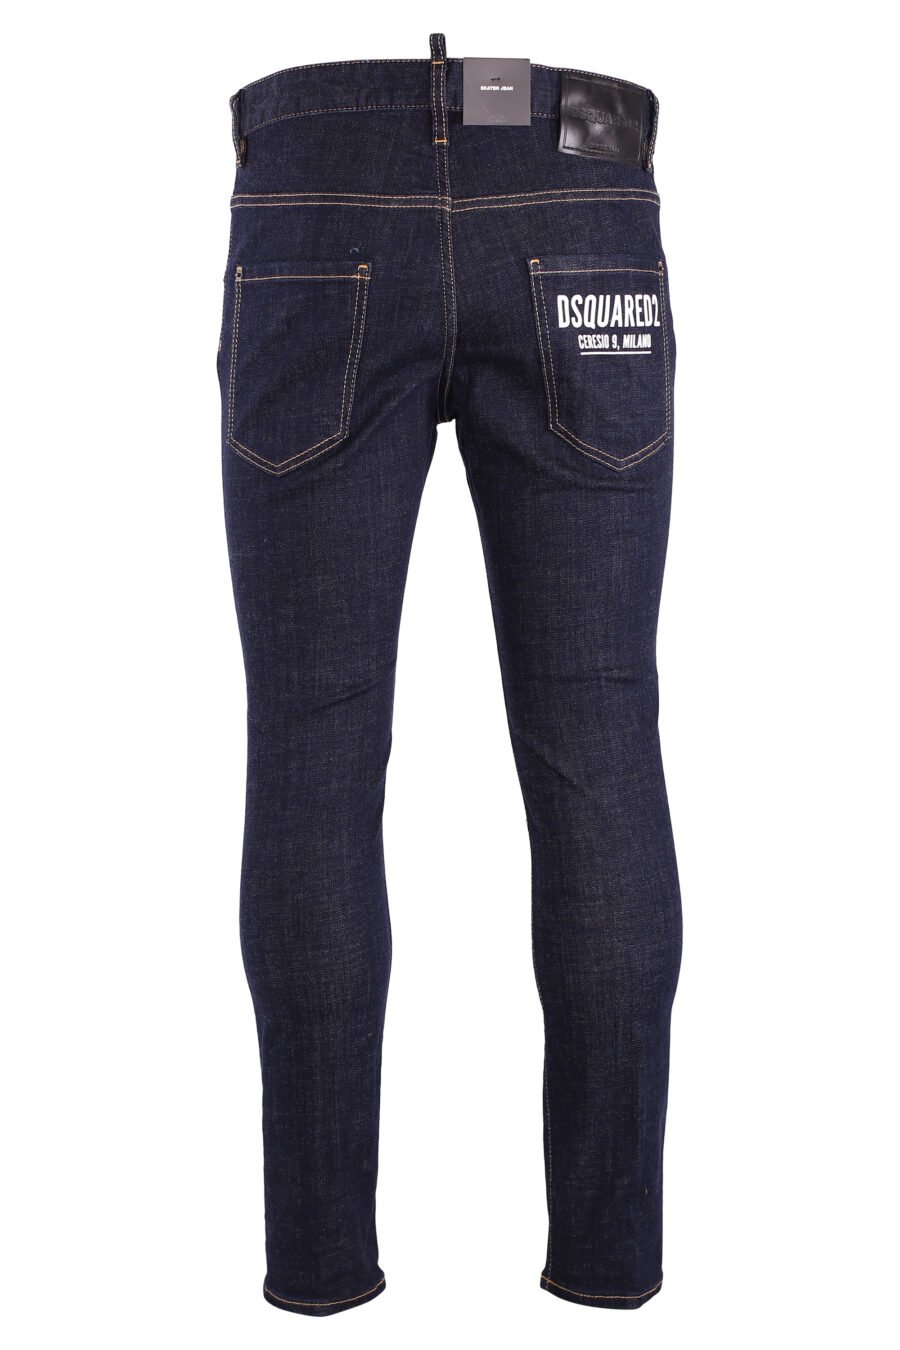 Dunkelblaue Skater-Jeans - IMG 9005